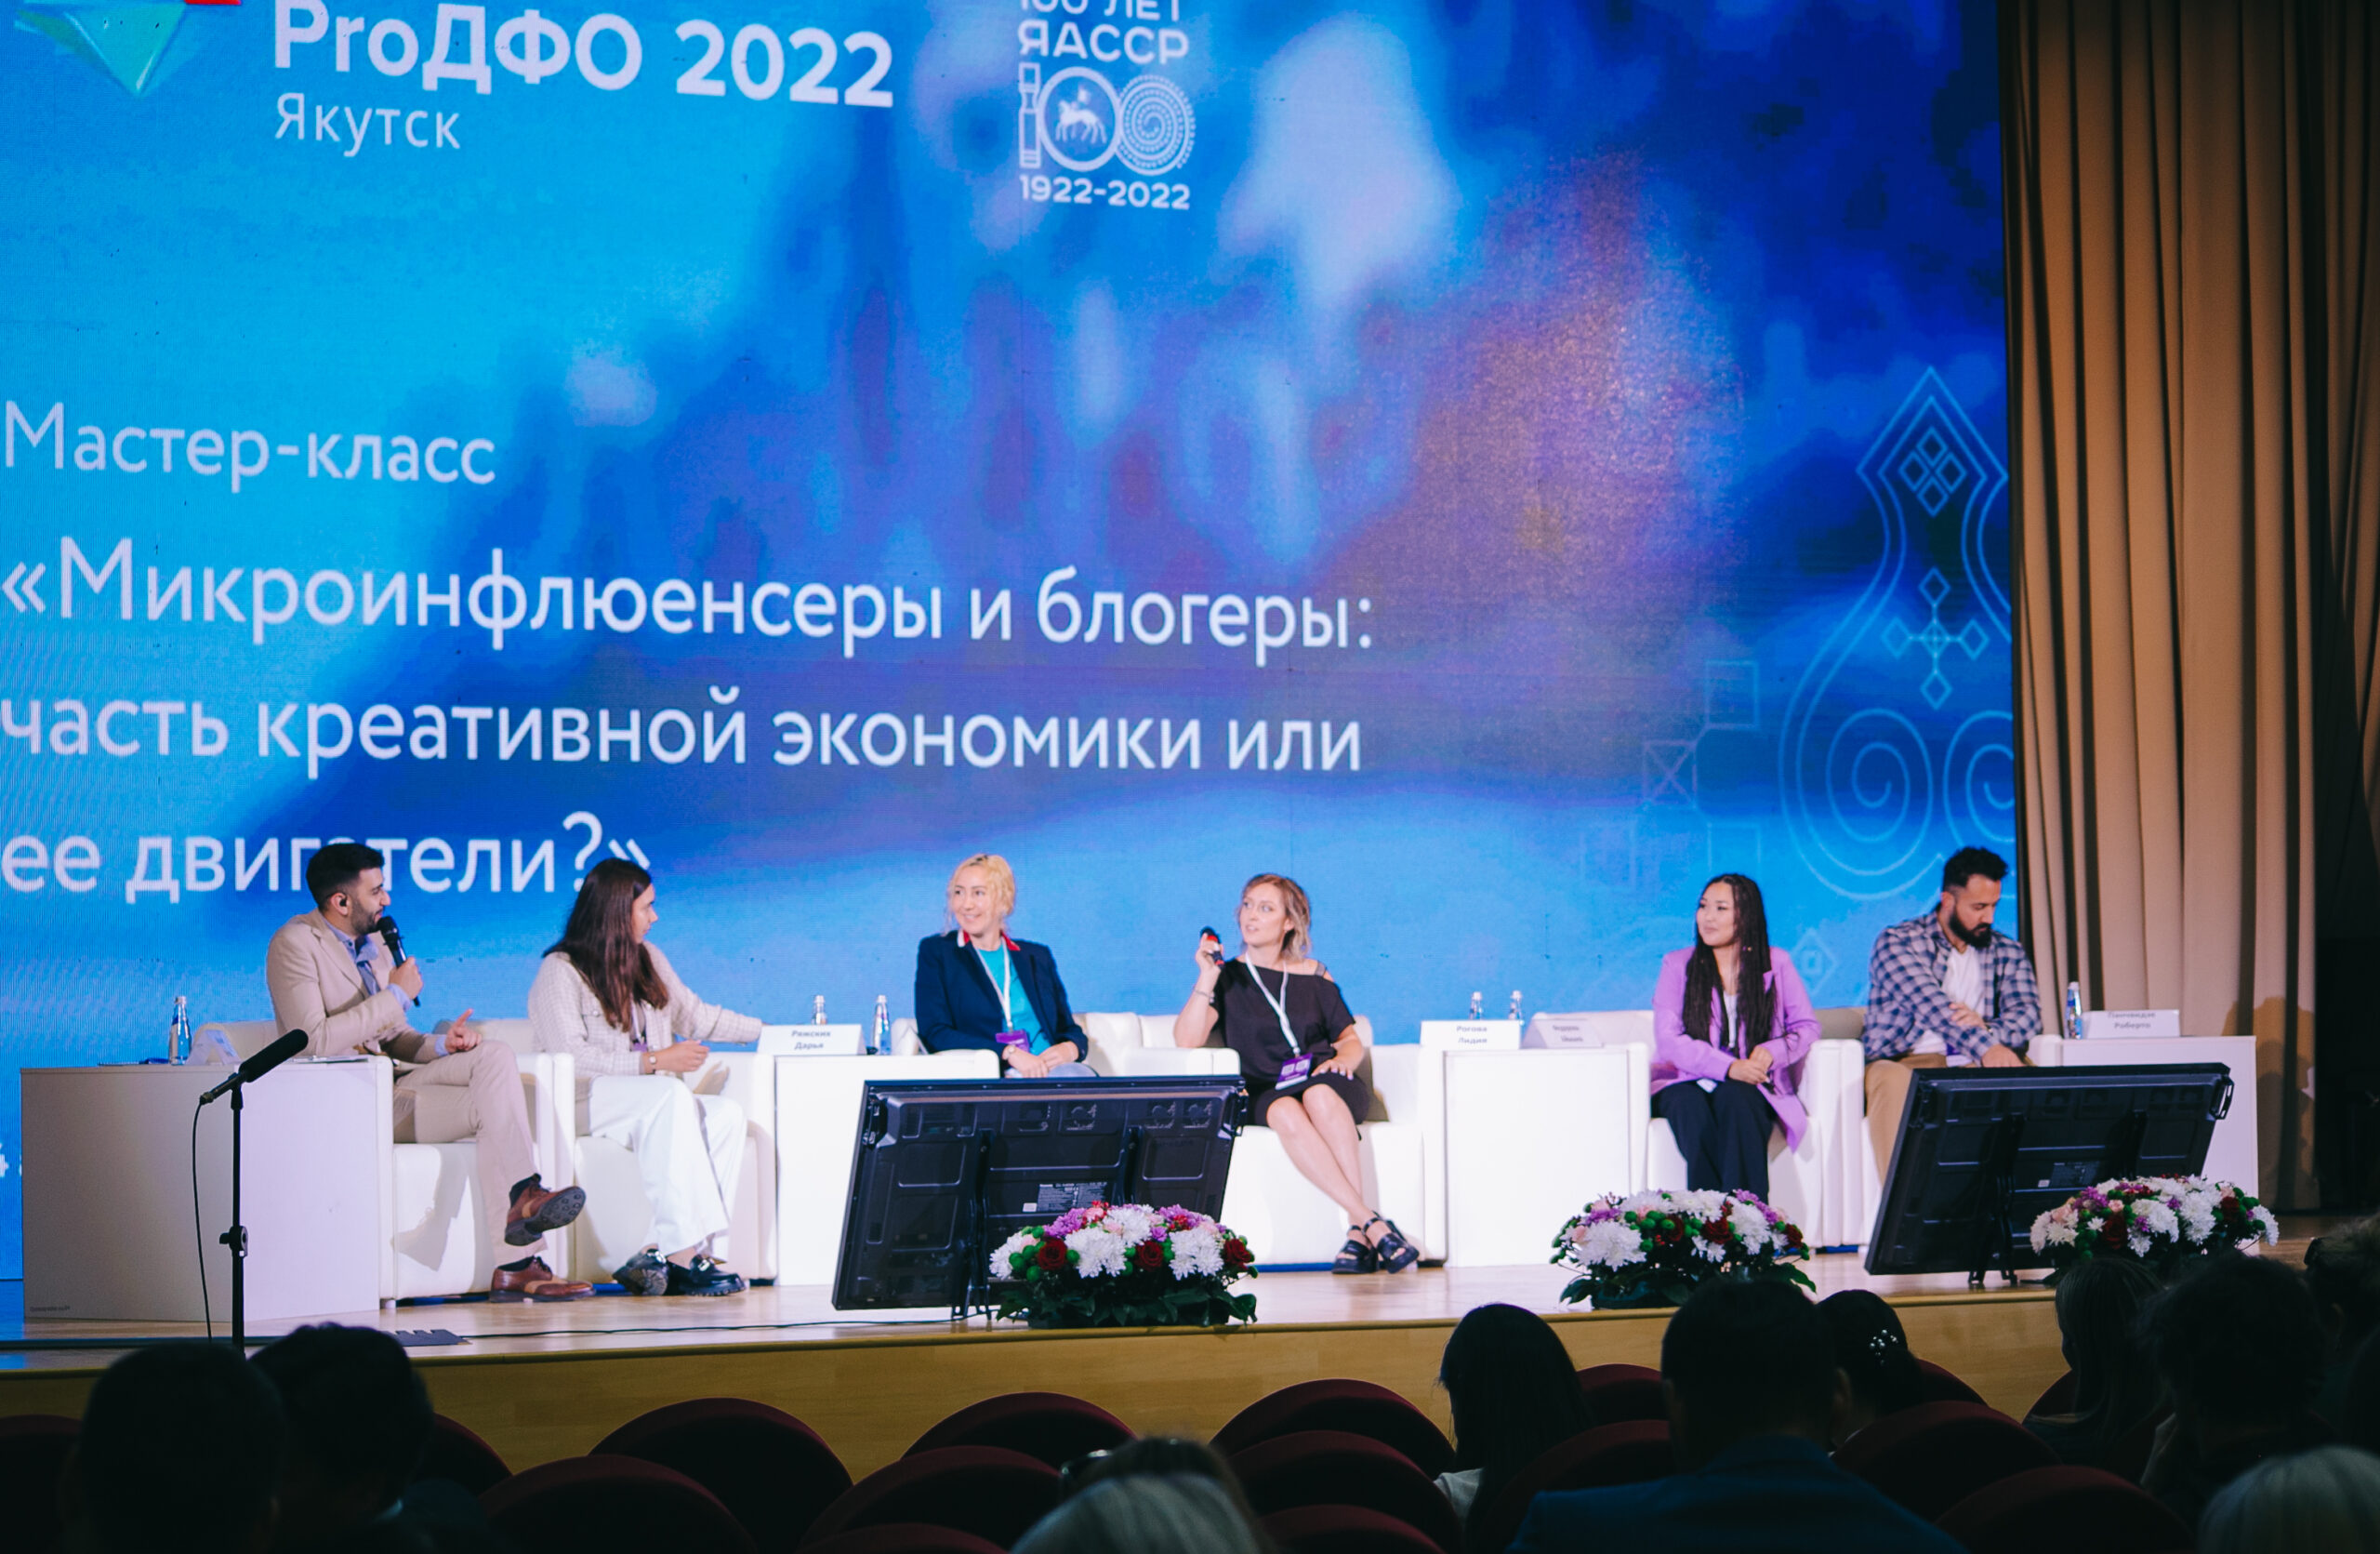 Эксперты форума «ProДФО» в Якутске: Блогеры принесли особый вклад в развитие экономики